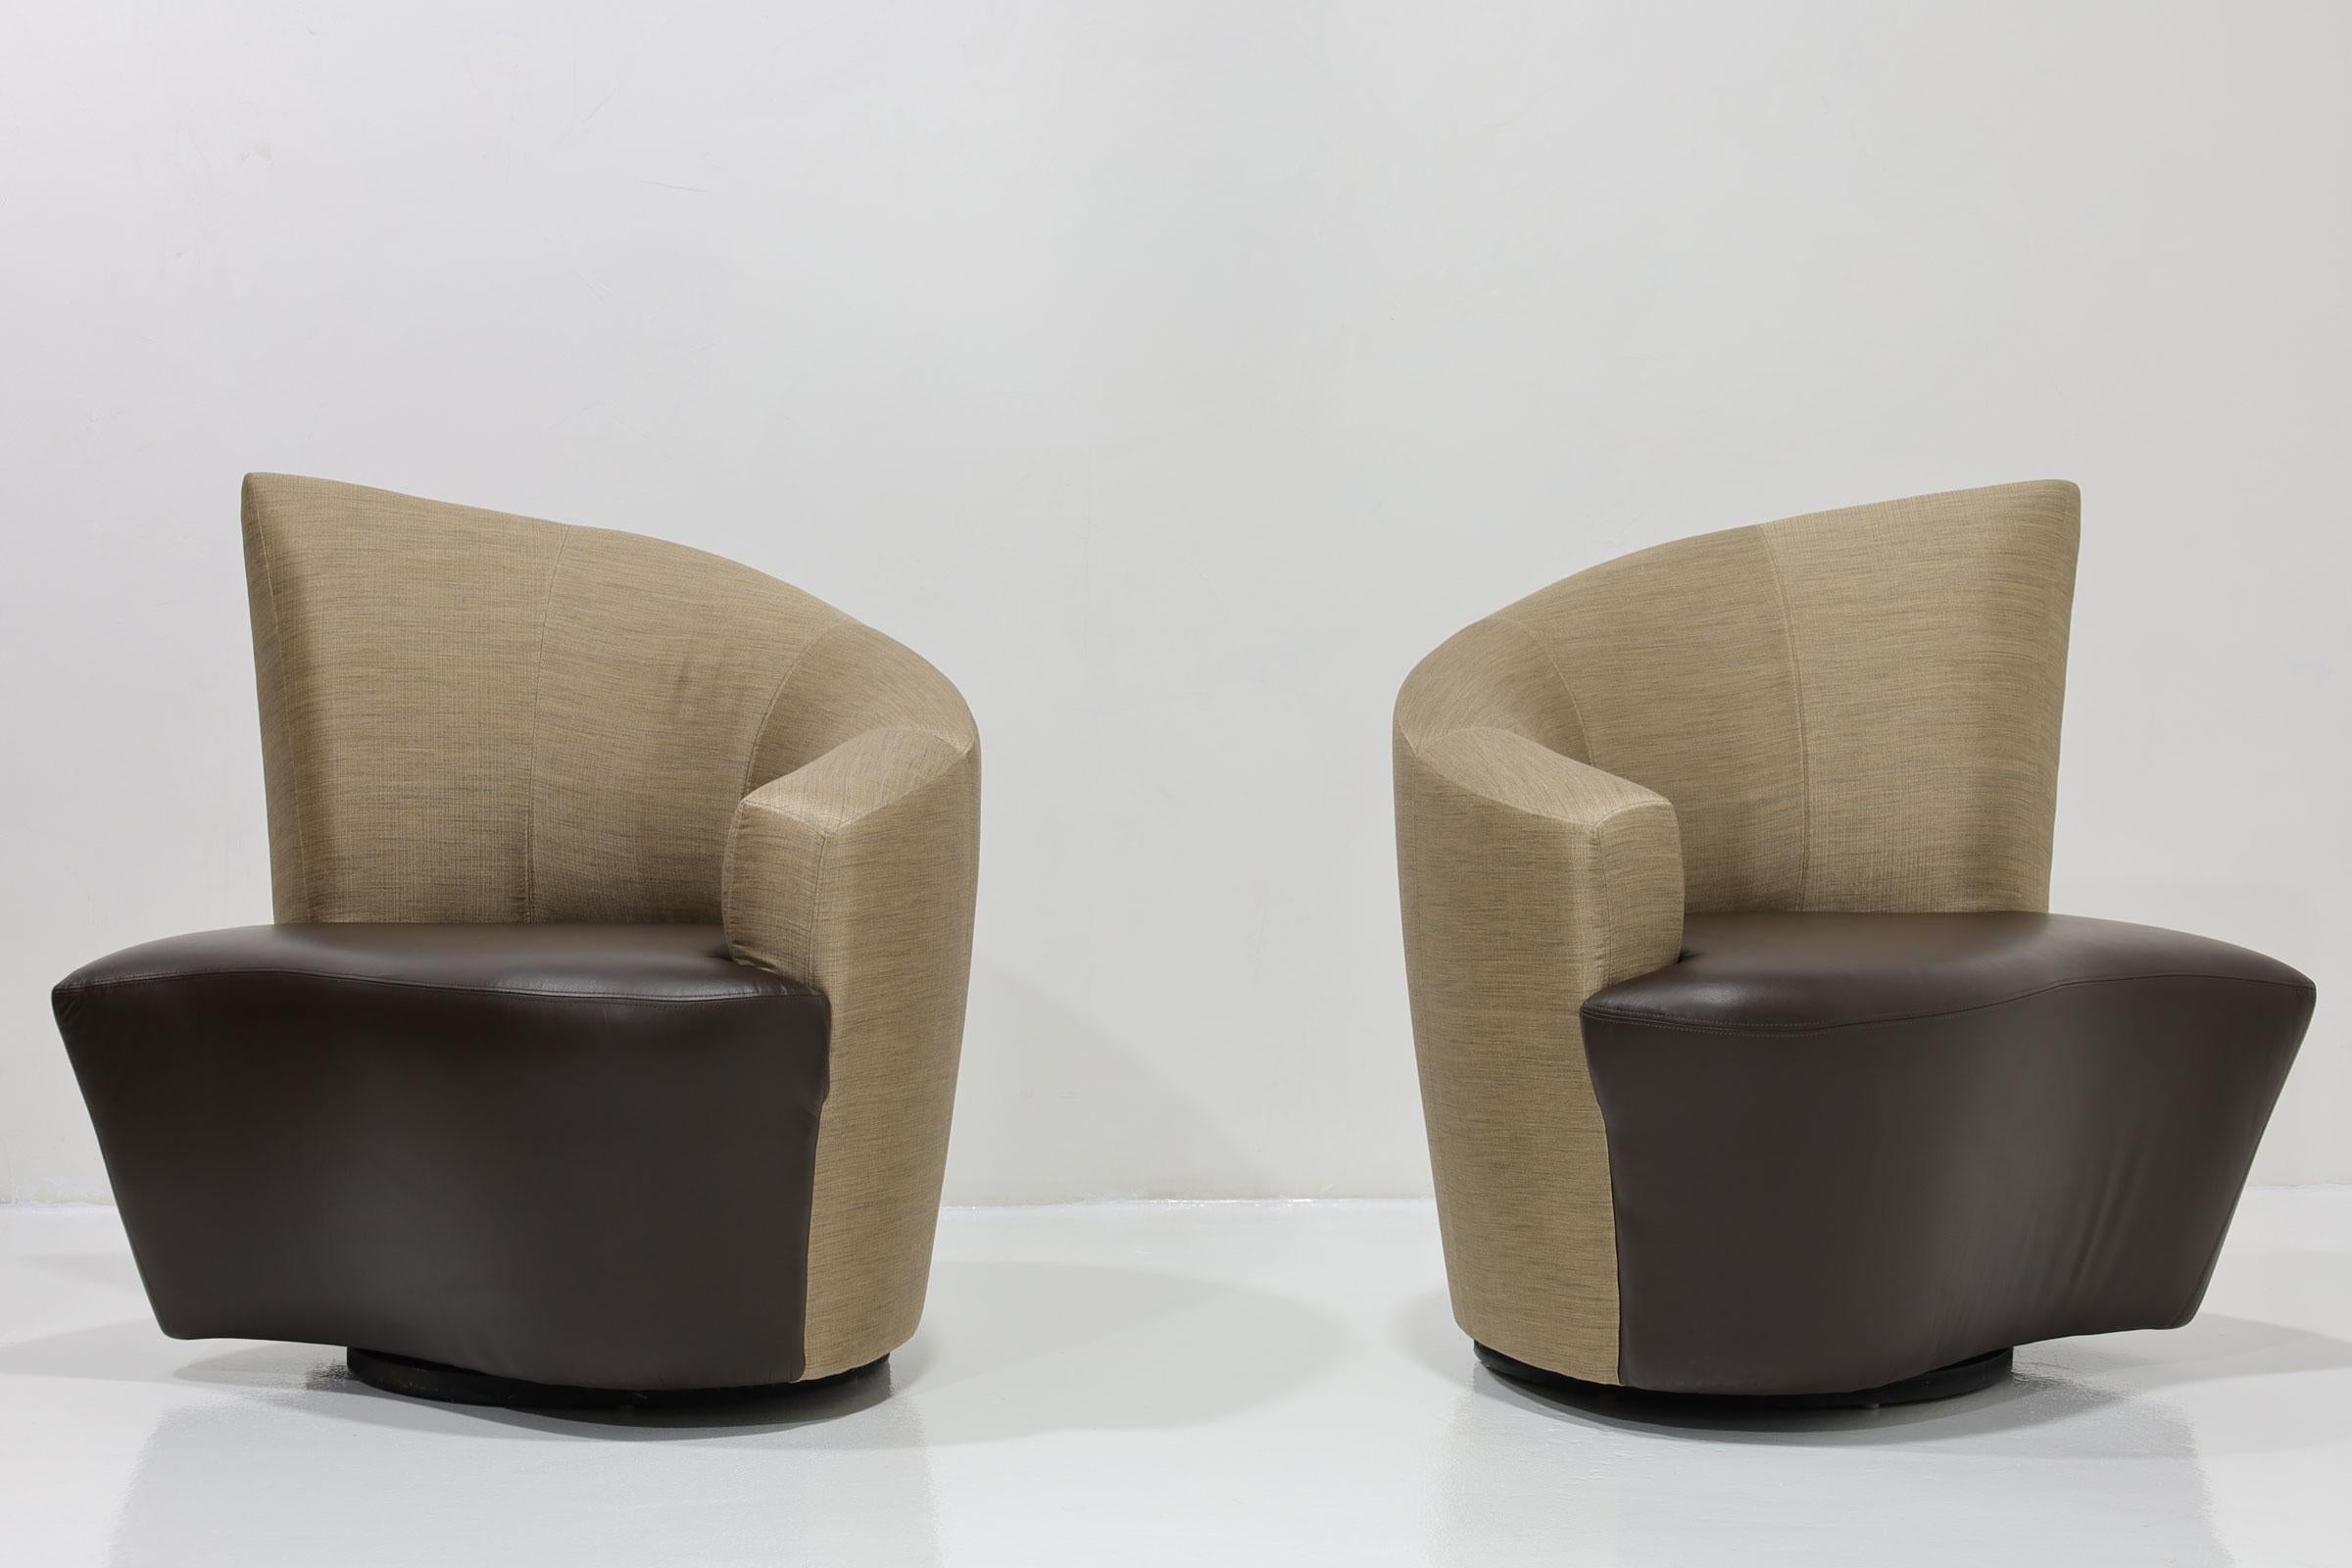 Paire de fauteuils pivotants post-modernes Vladimir Kagan CIRCA, recouverts de soie et de cuir, vers les années 1990. Amoureux de Bilbao, en Espagne, la chaise Bilbao est une manifestation des impressions de Vladimir Kagan lors de ses vacances. Il a